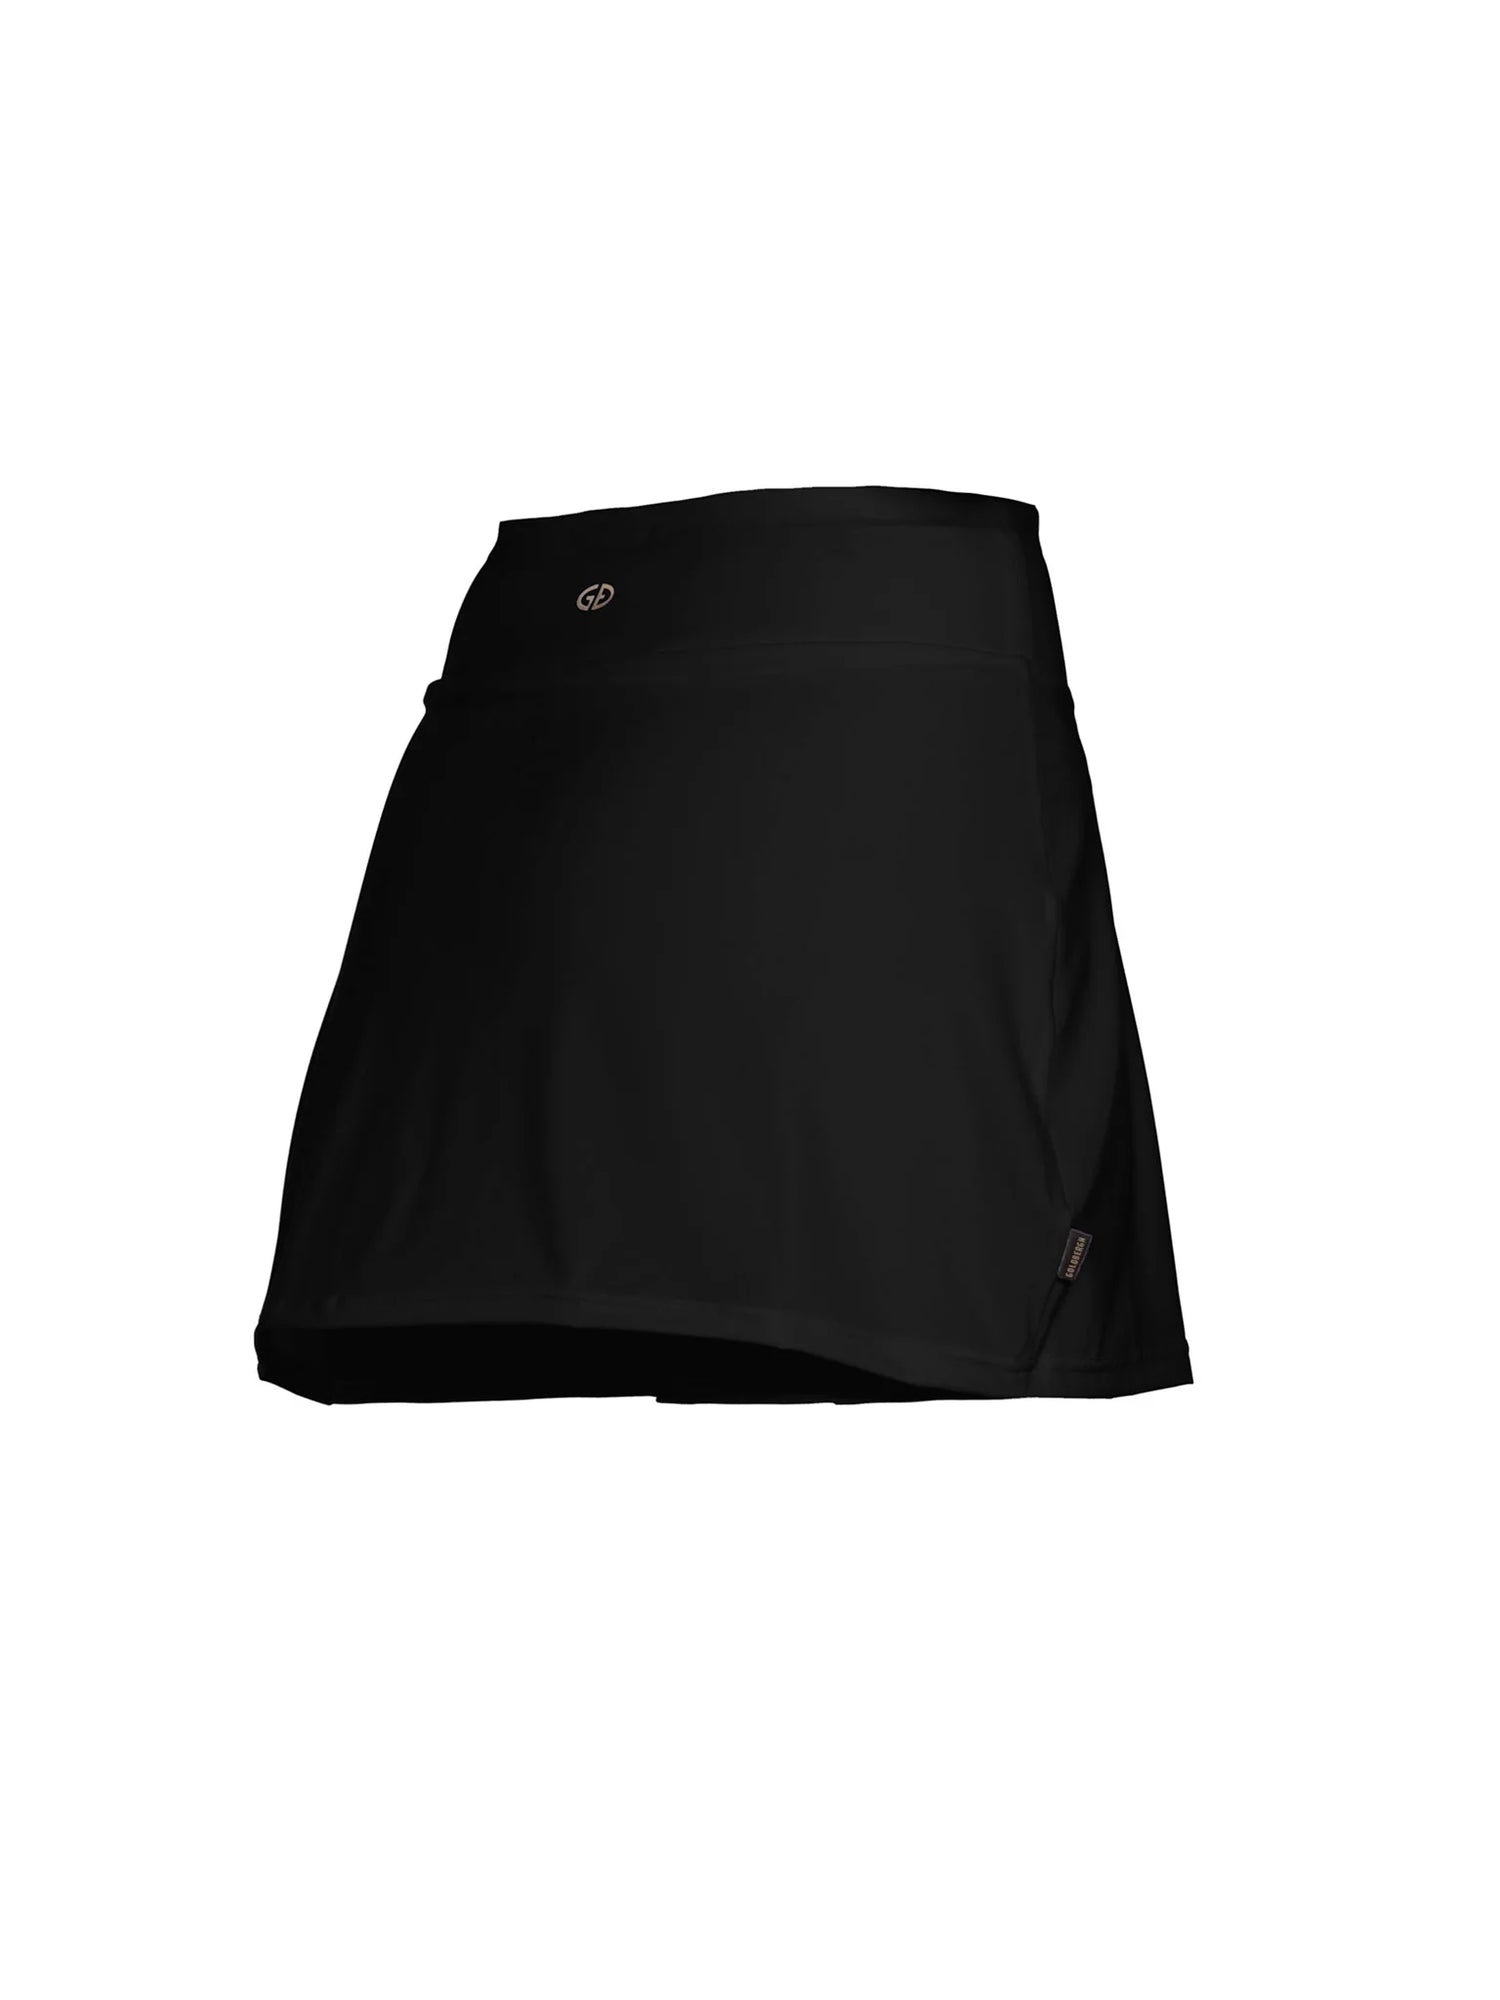 Goldbergh Anais Skirt